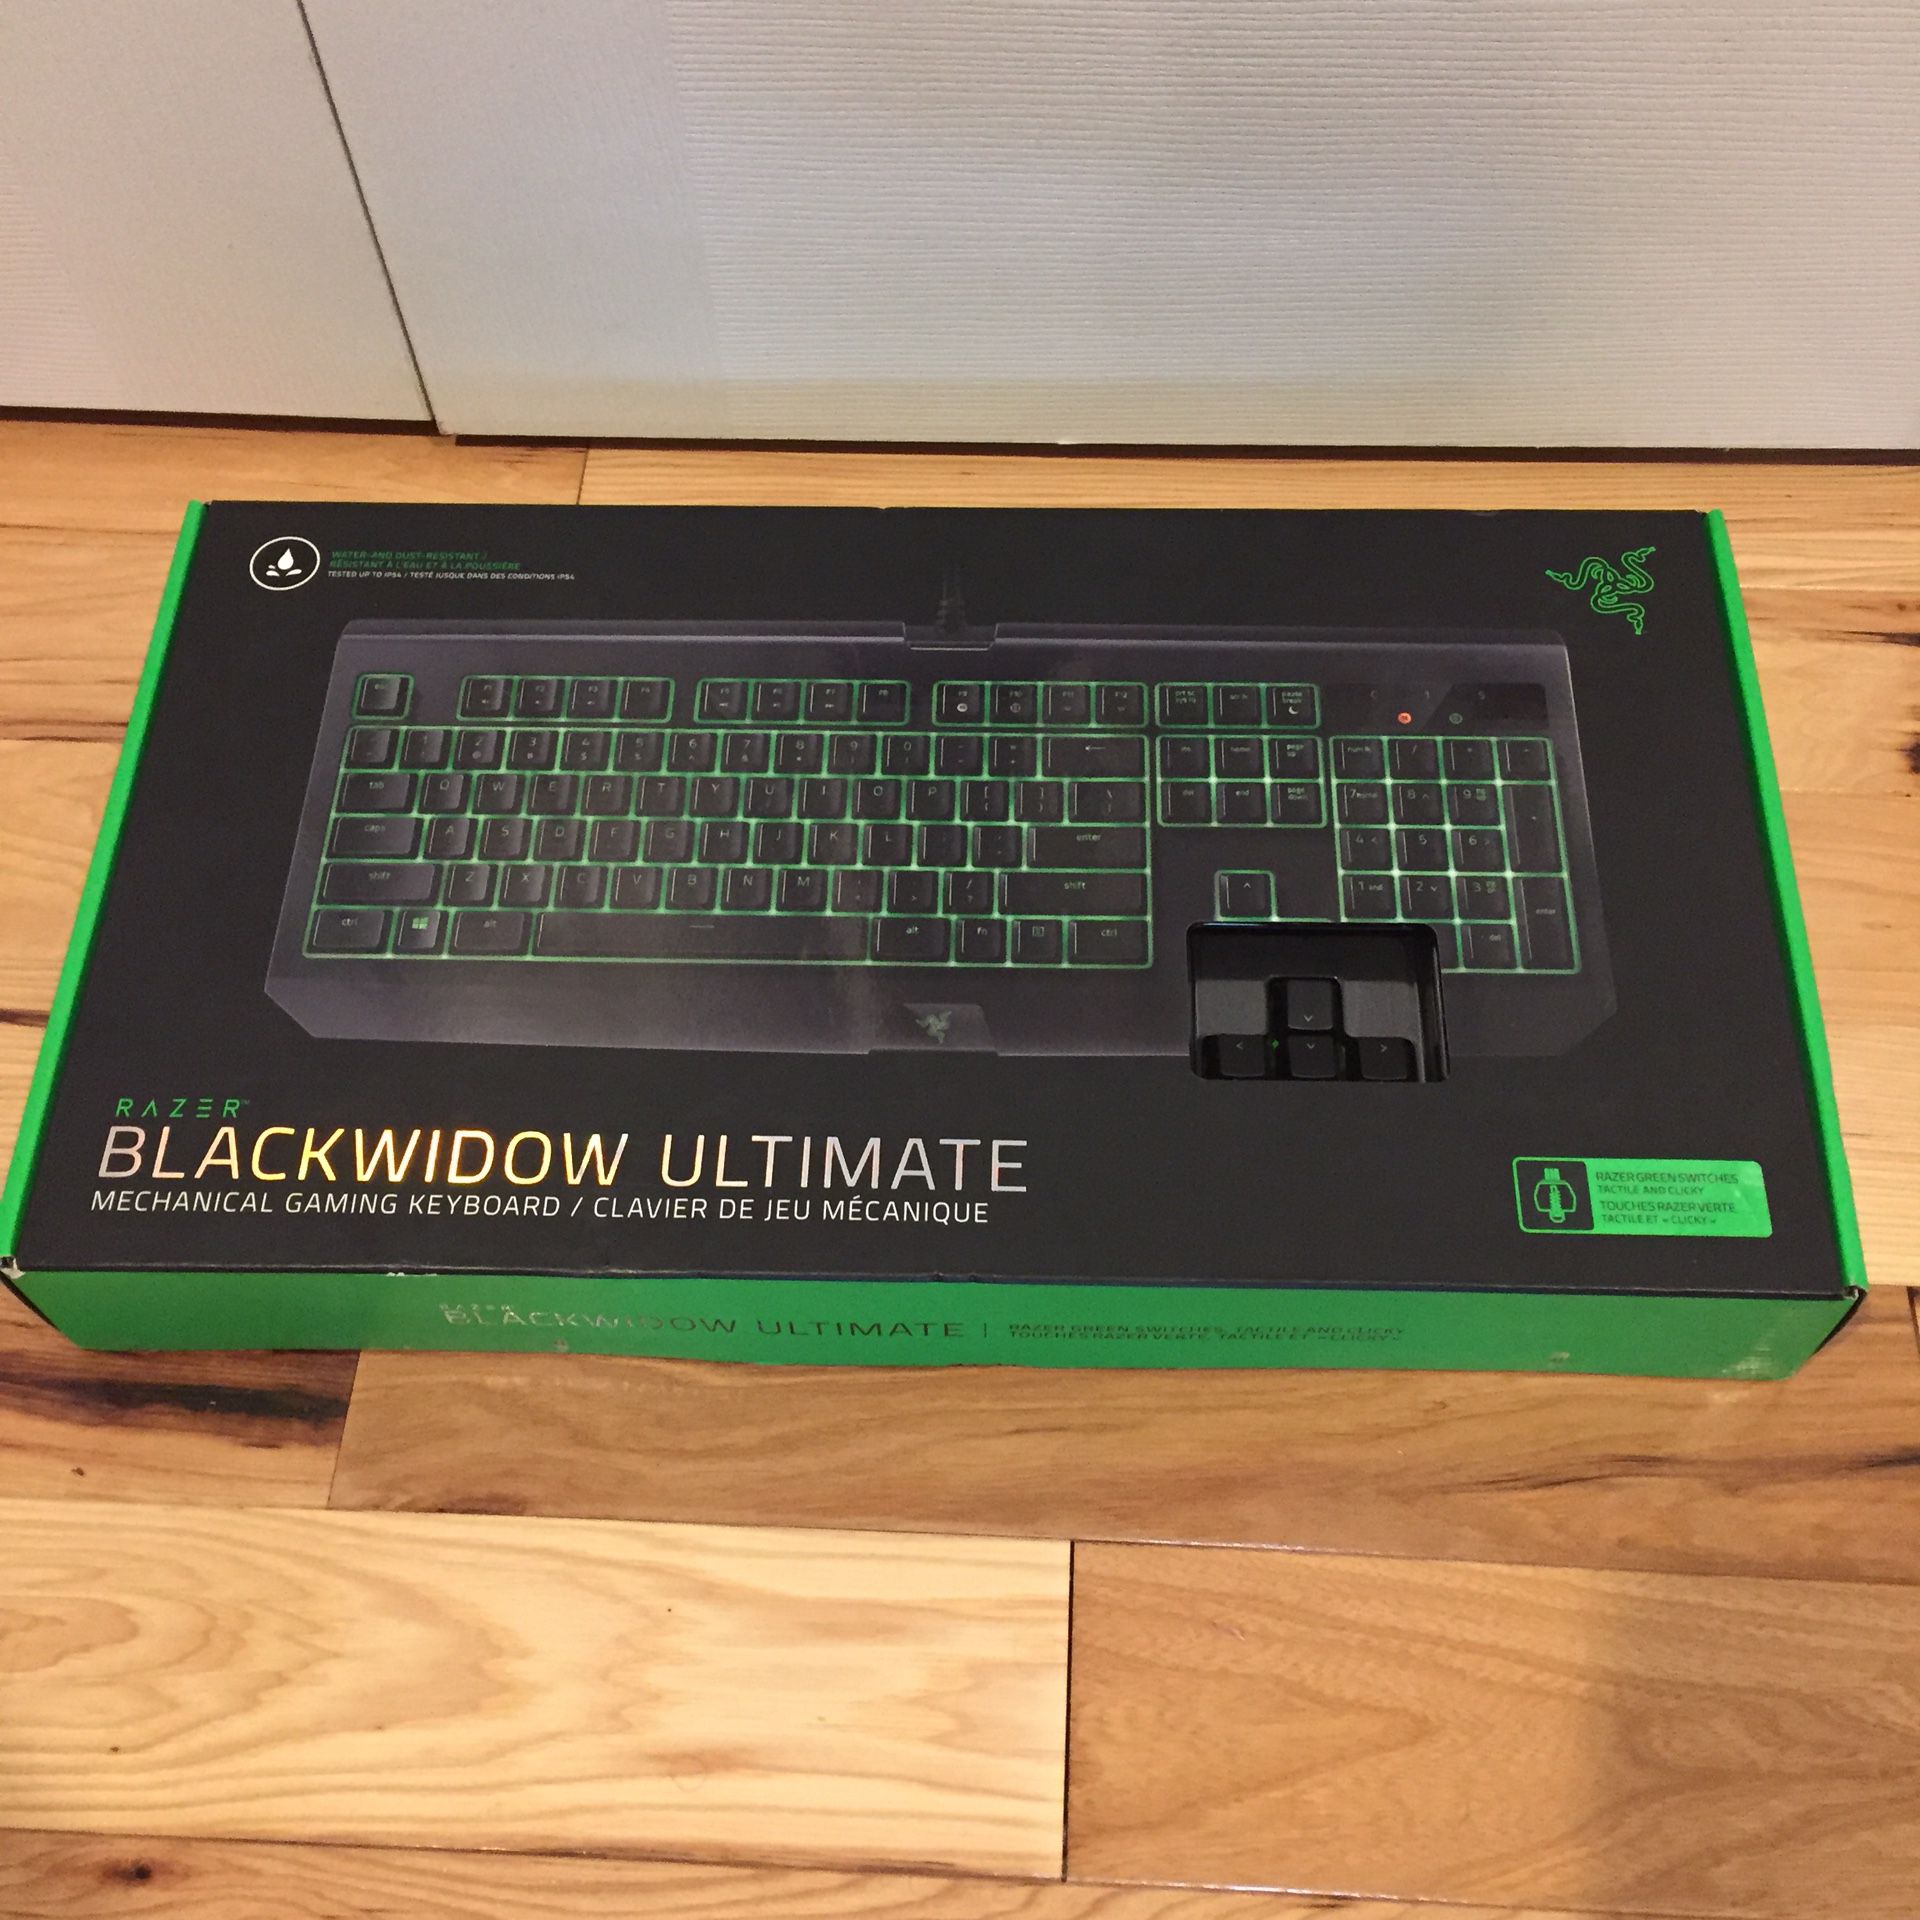 Razer blackwidow ultimate mechanical gaming keyboard